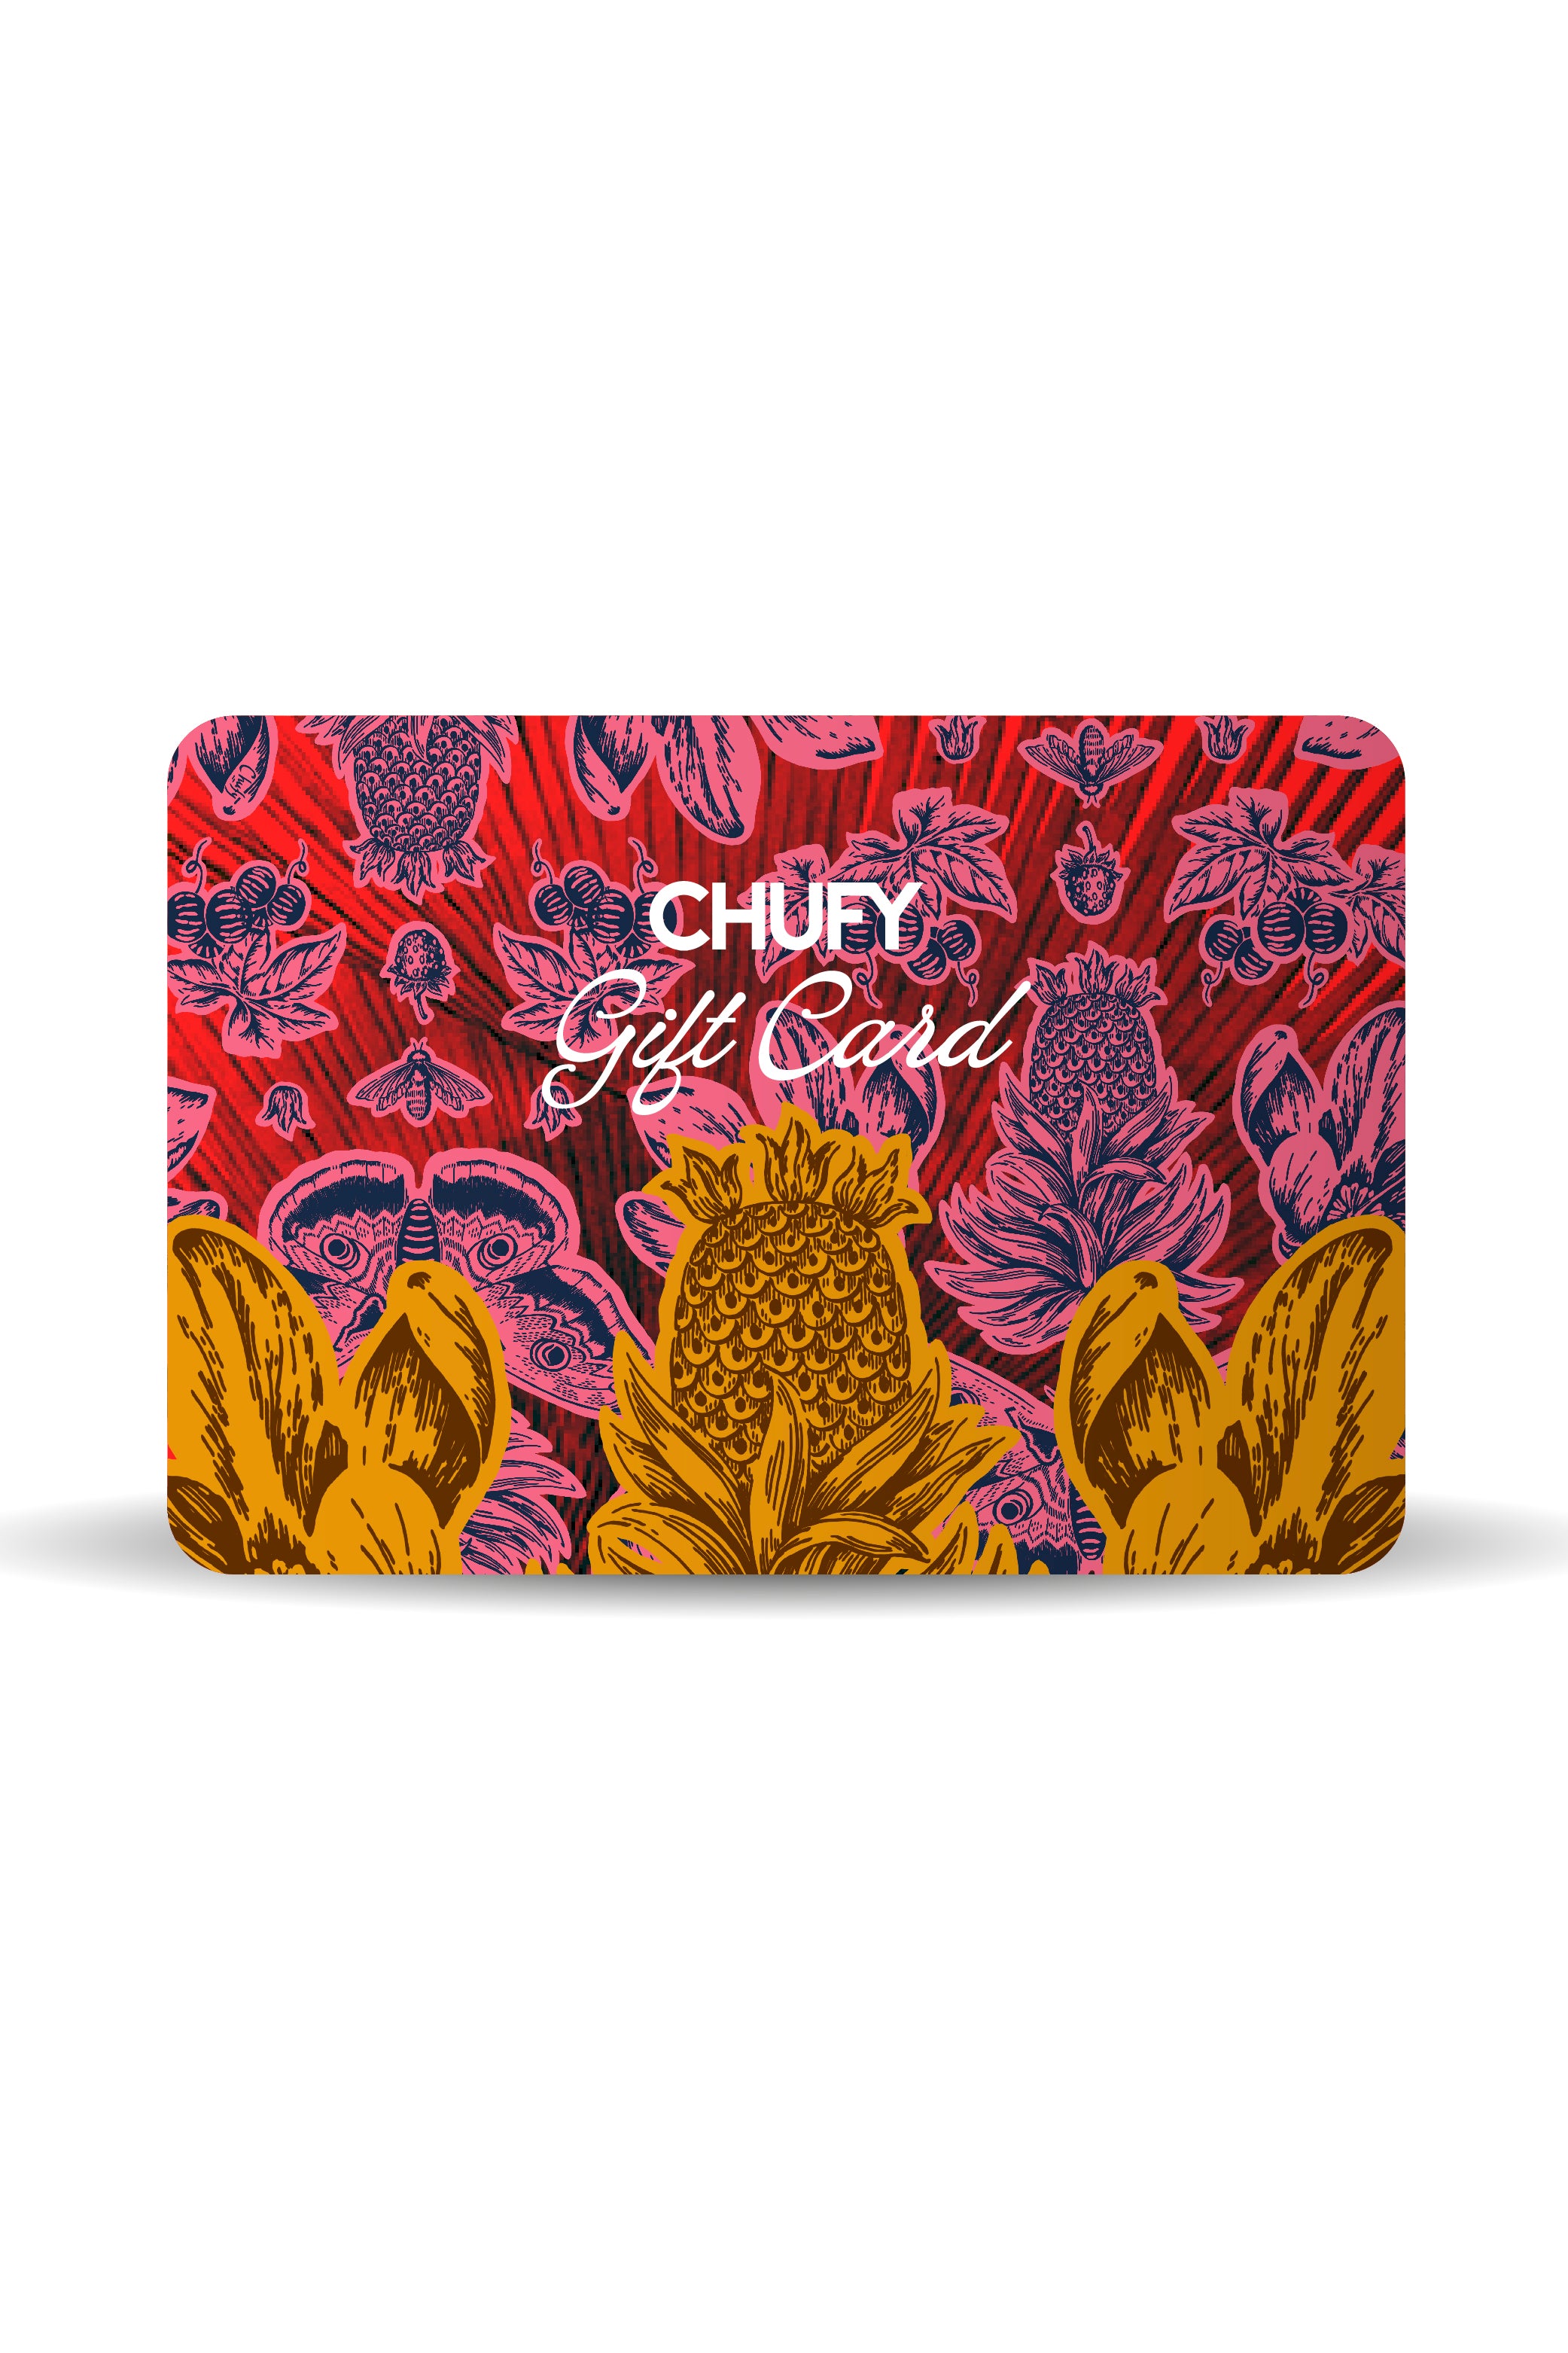 Chufy Gift Card